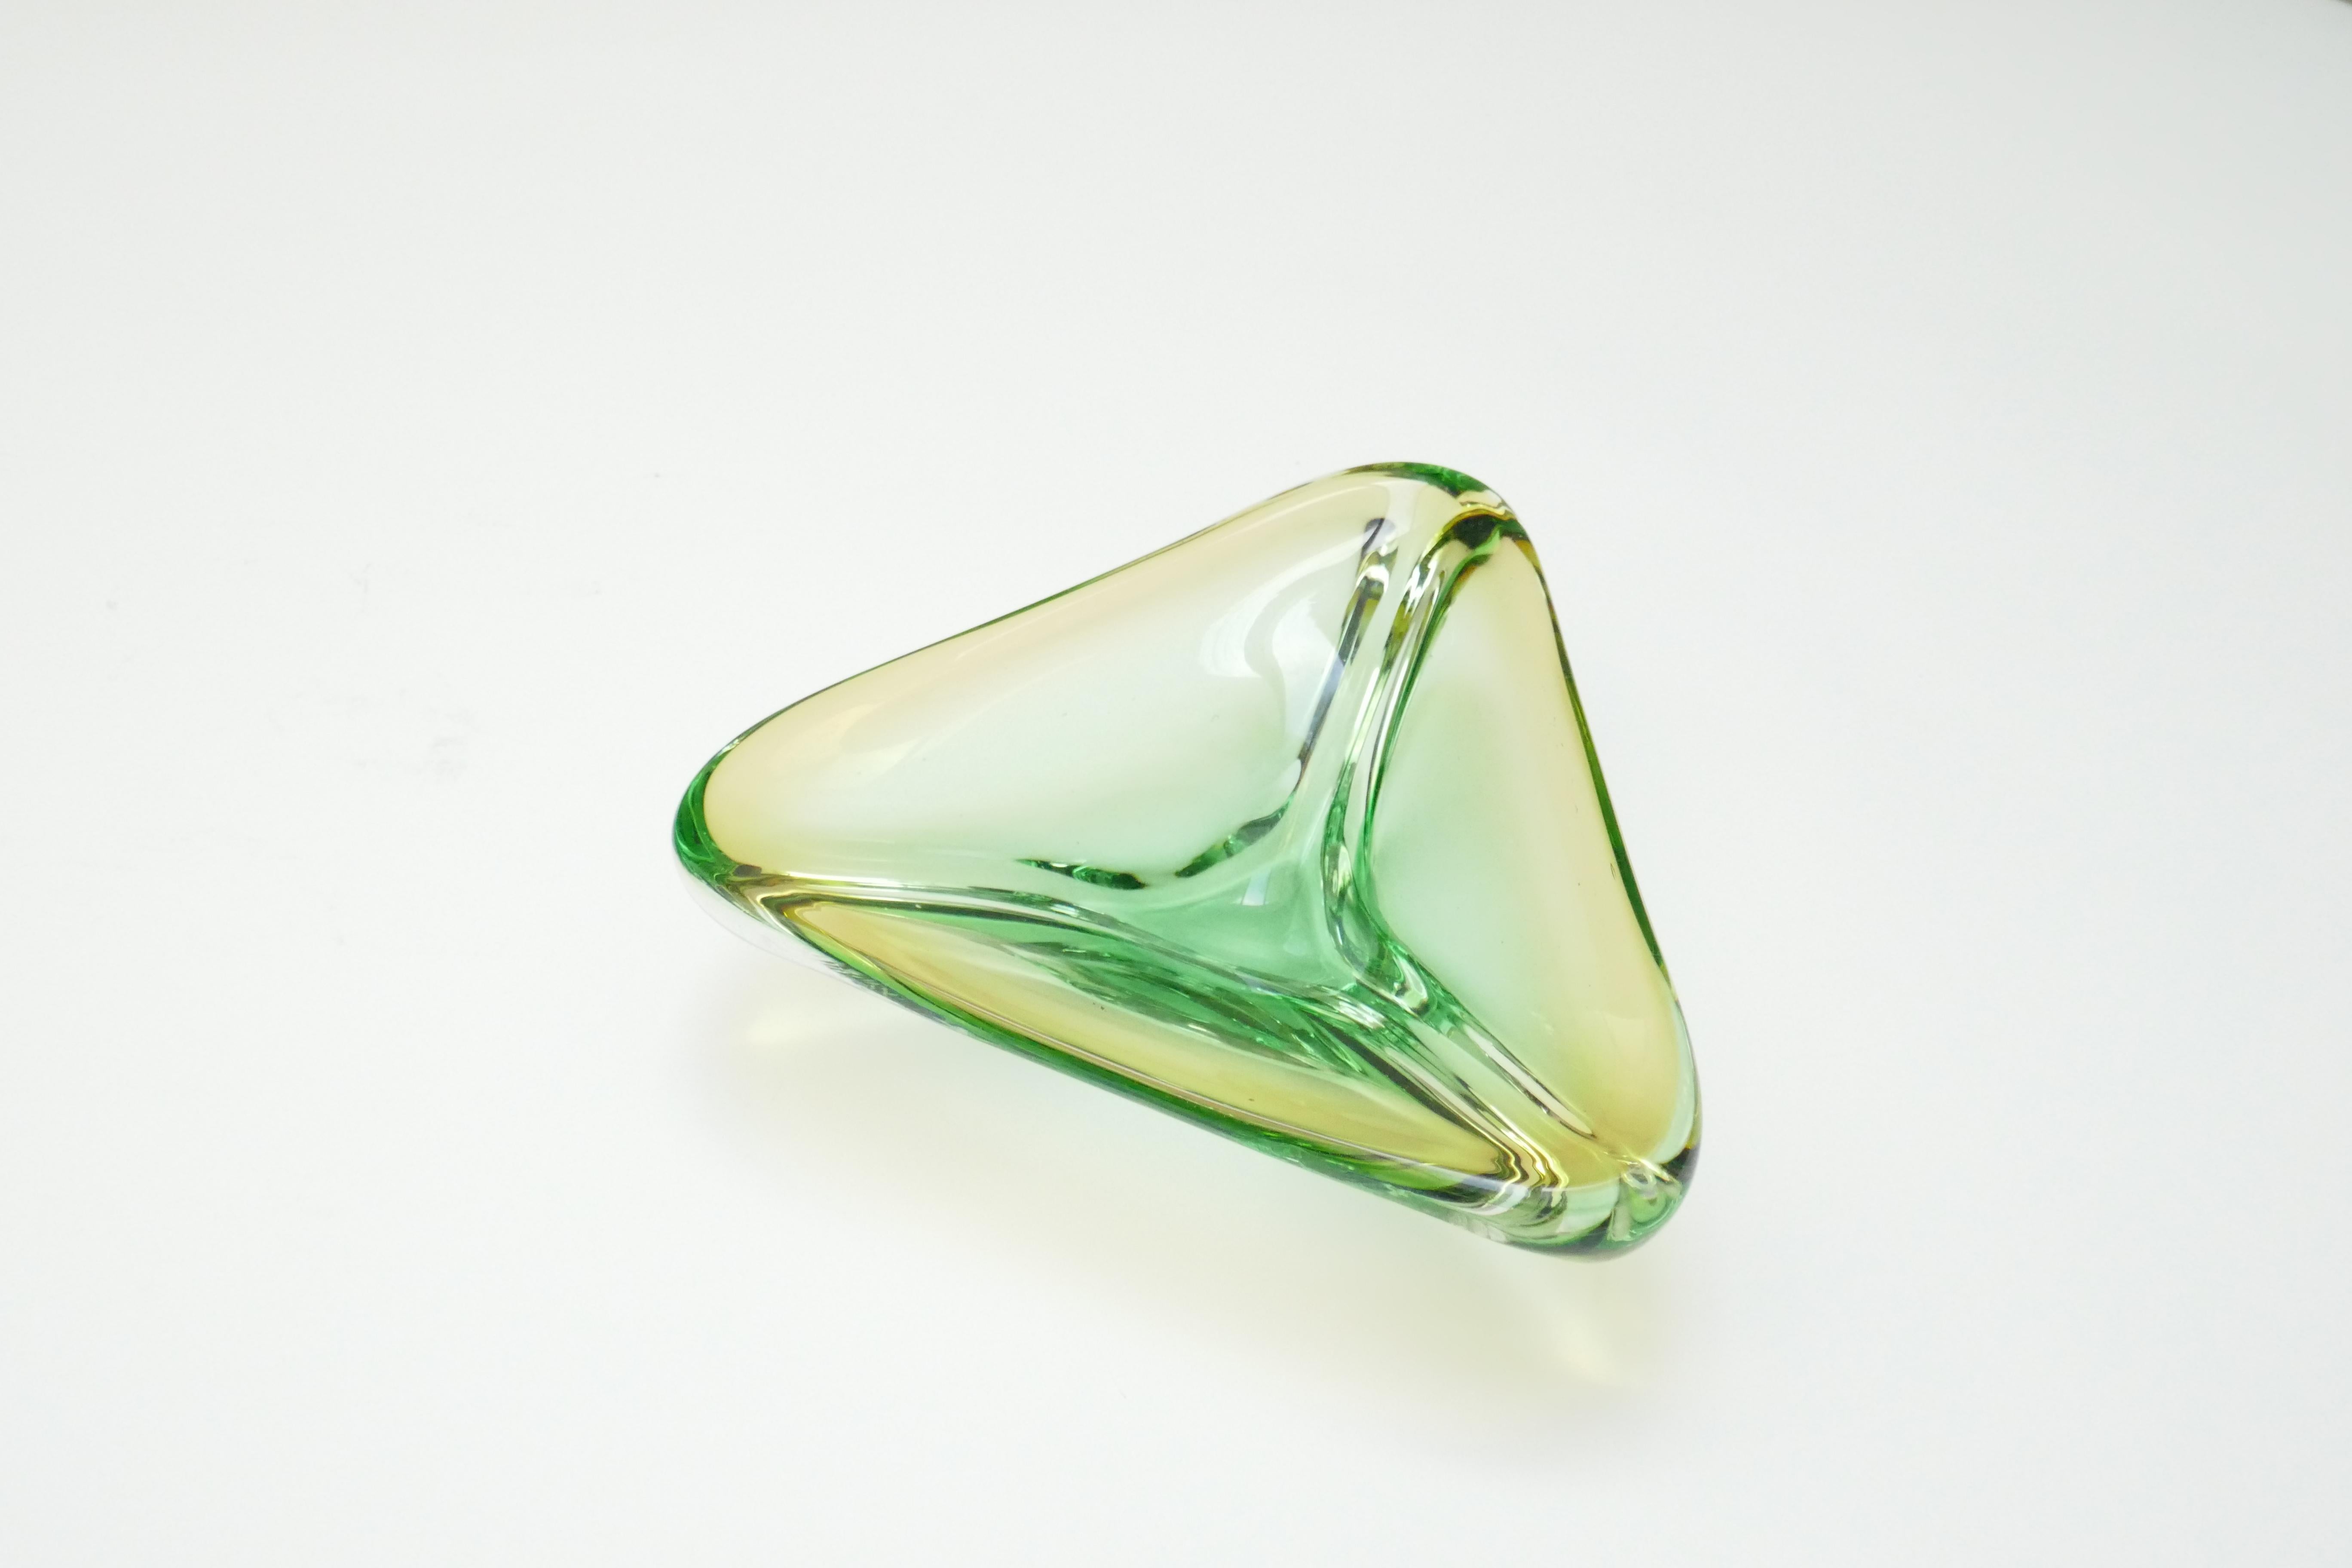 Un objet en verre de Murano vénitien très élégant, de forme triangulaire et d'une jolie couleur verte et claire. Avec un bord ambré. Utilisant la célèbre technique Sommerso, le bol est en verre vert encastré dans une base transparente avec un bord